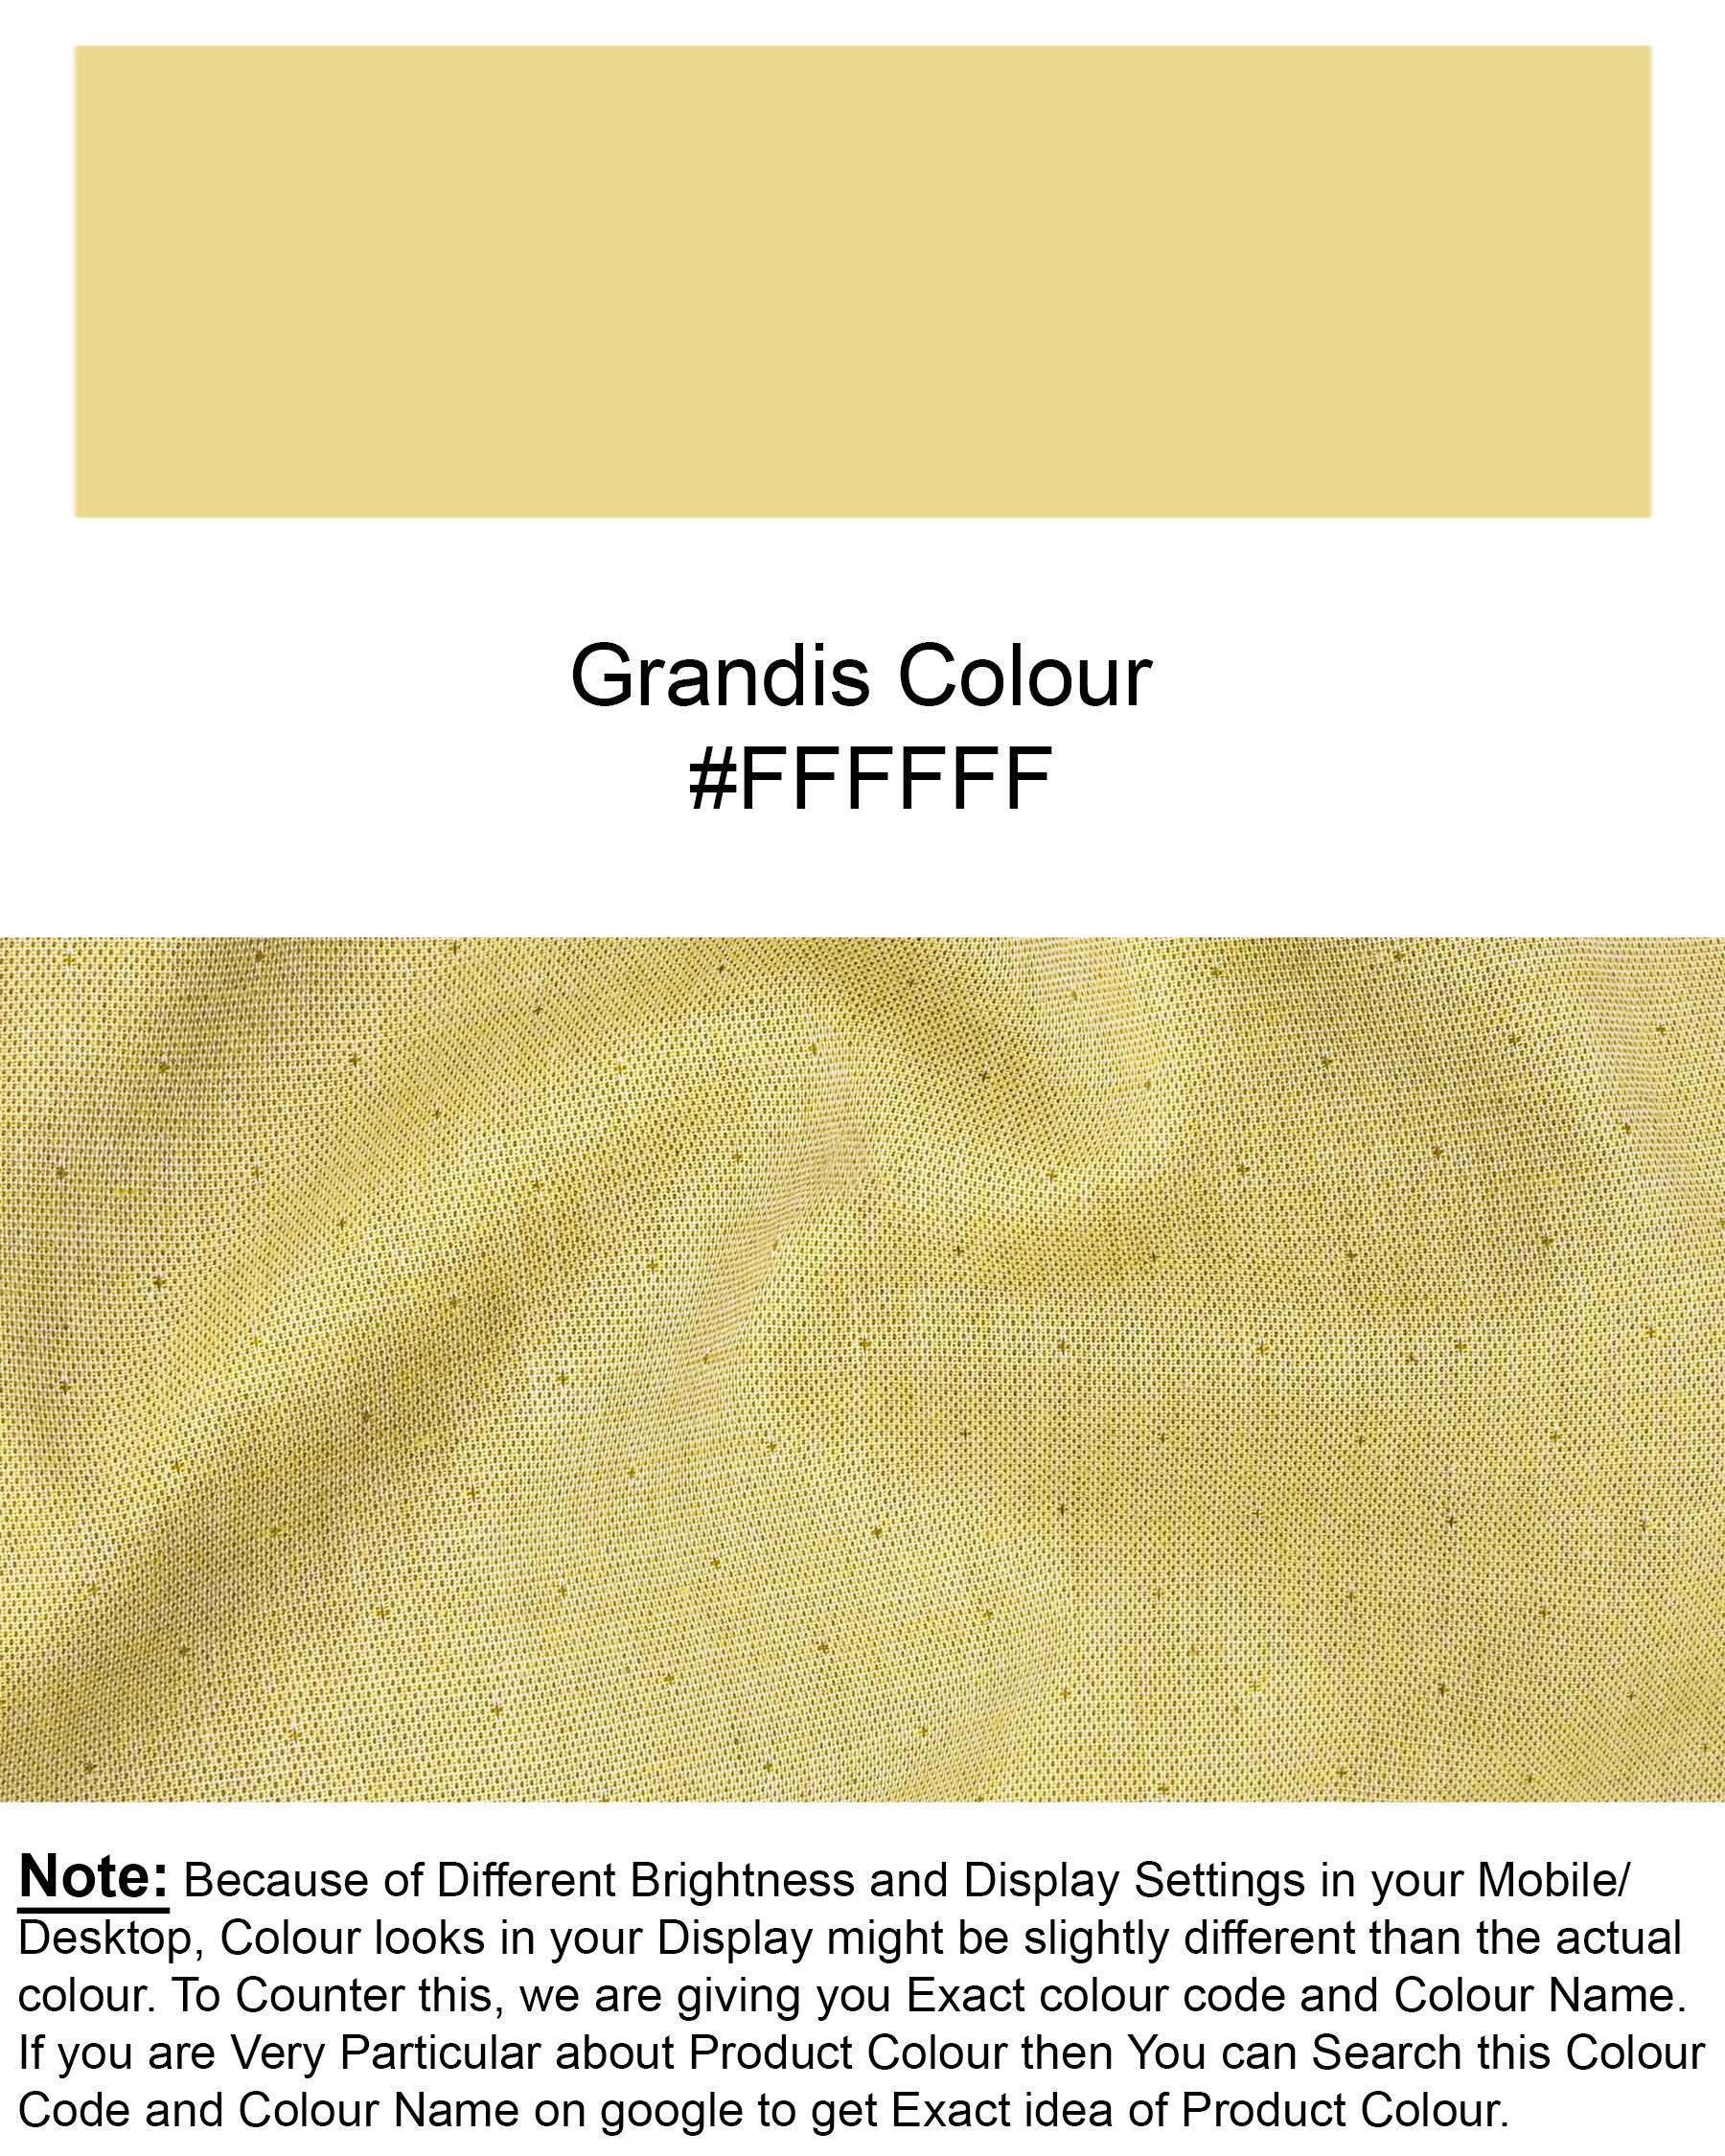 Grandis Yellow Dobby Textured Premium Cotton Shirt 6892-CA-38,6892-CA-38,6892-CA-39,6892-CA-39,6892-CA-40,6892-CA-40,6892-CA-42,6892-CA-42,6892-CA-44,6892-CA-44,6892-CA-46,6892-CA-46,6892-CA-48,6892-CA-48,6892-CA-50,6892-CA-50,6892-CA-52,6892-CA-52